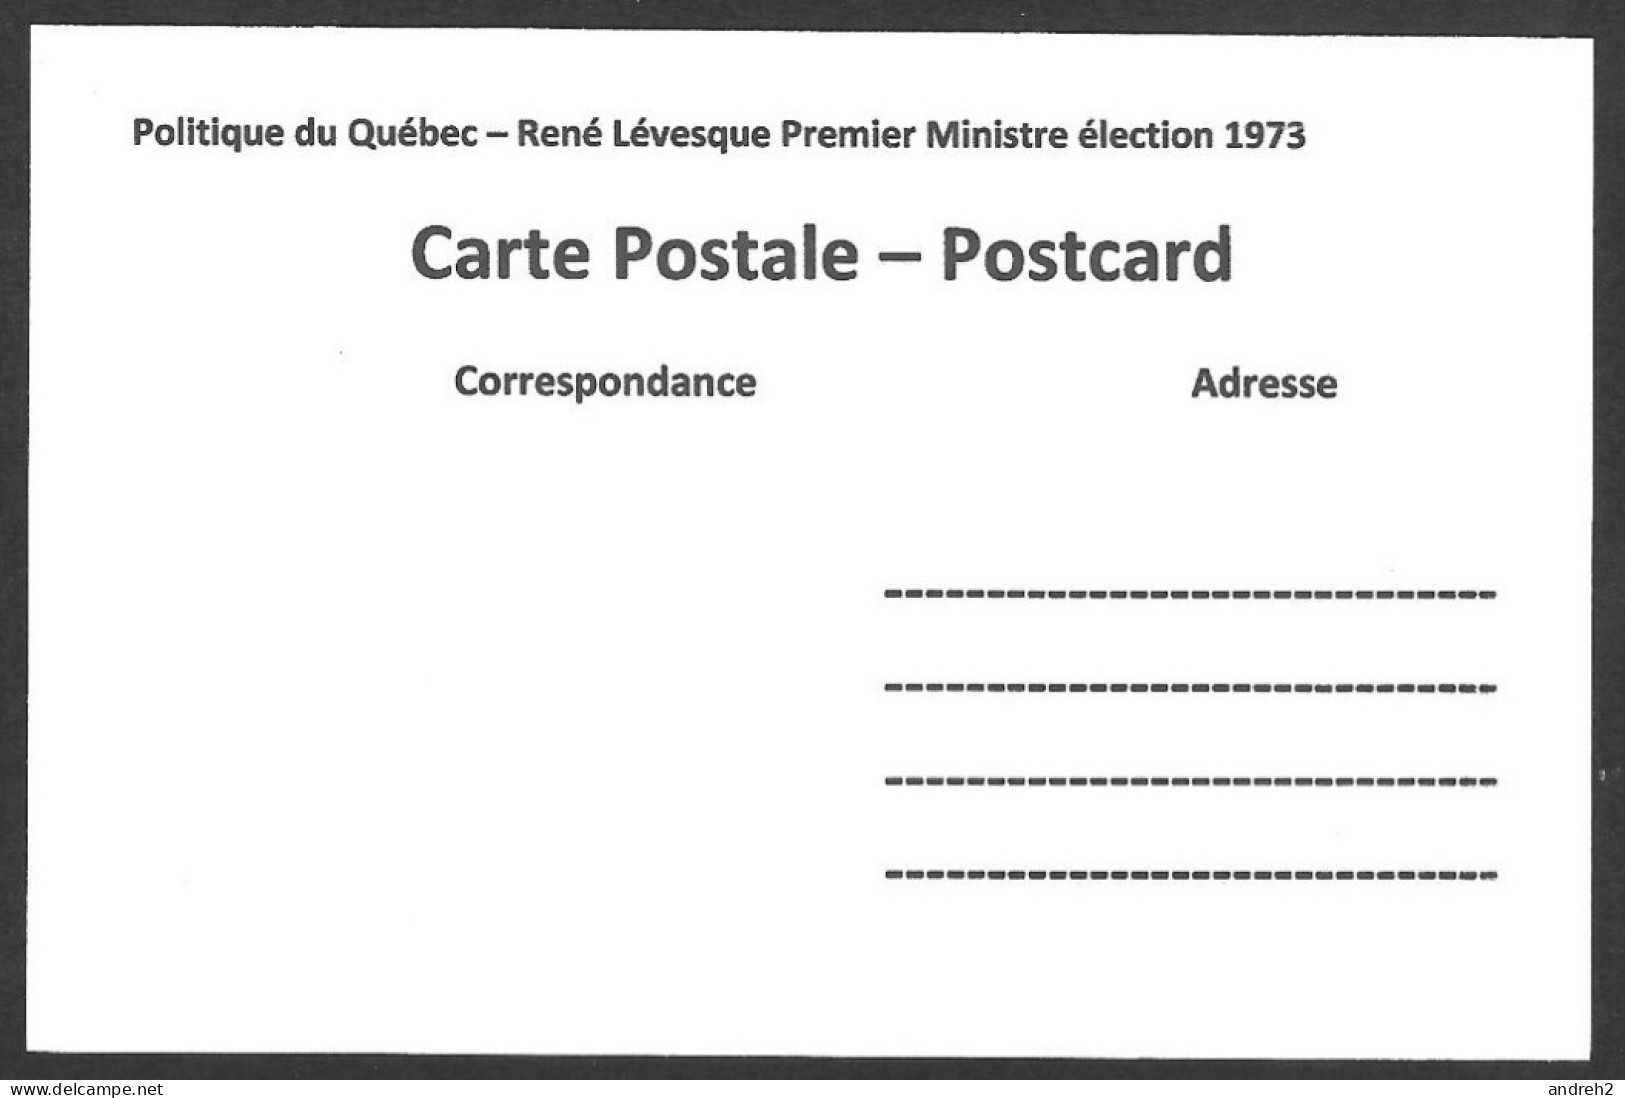 Politique  Partis Politiques & élections - René Lévesque Premier Ministre Élection 1973 - Political Parties & Elections